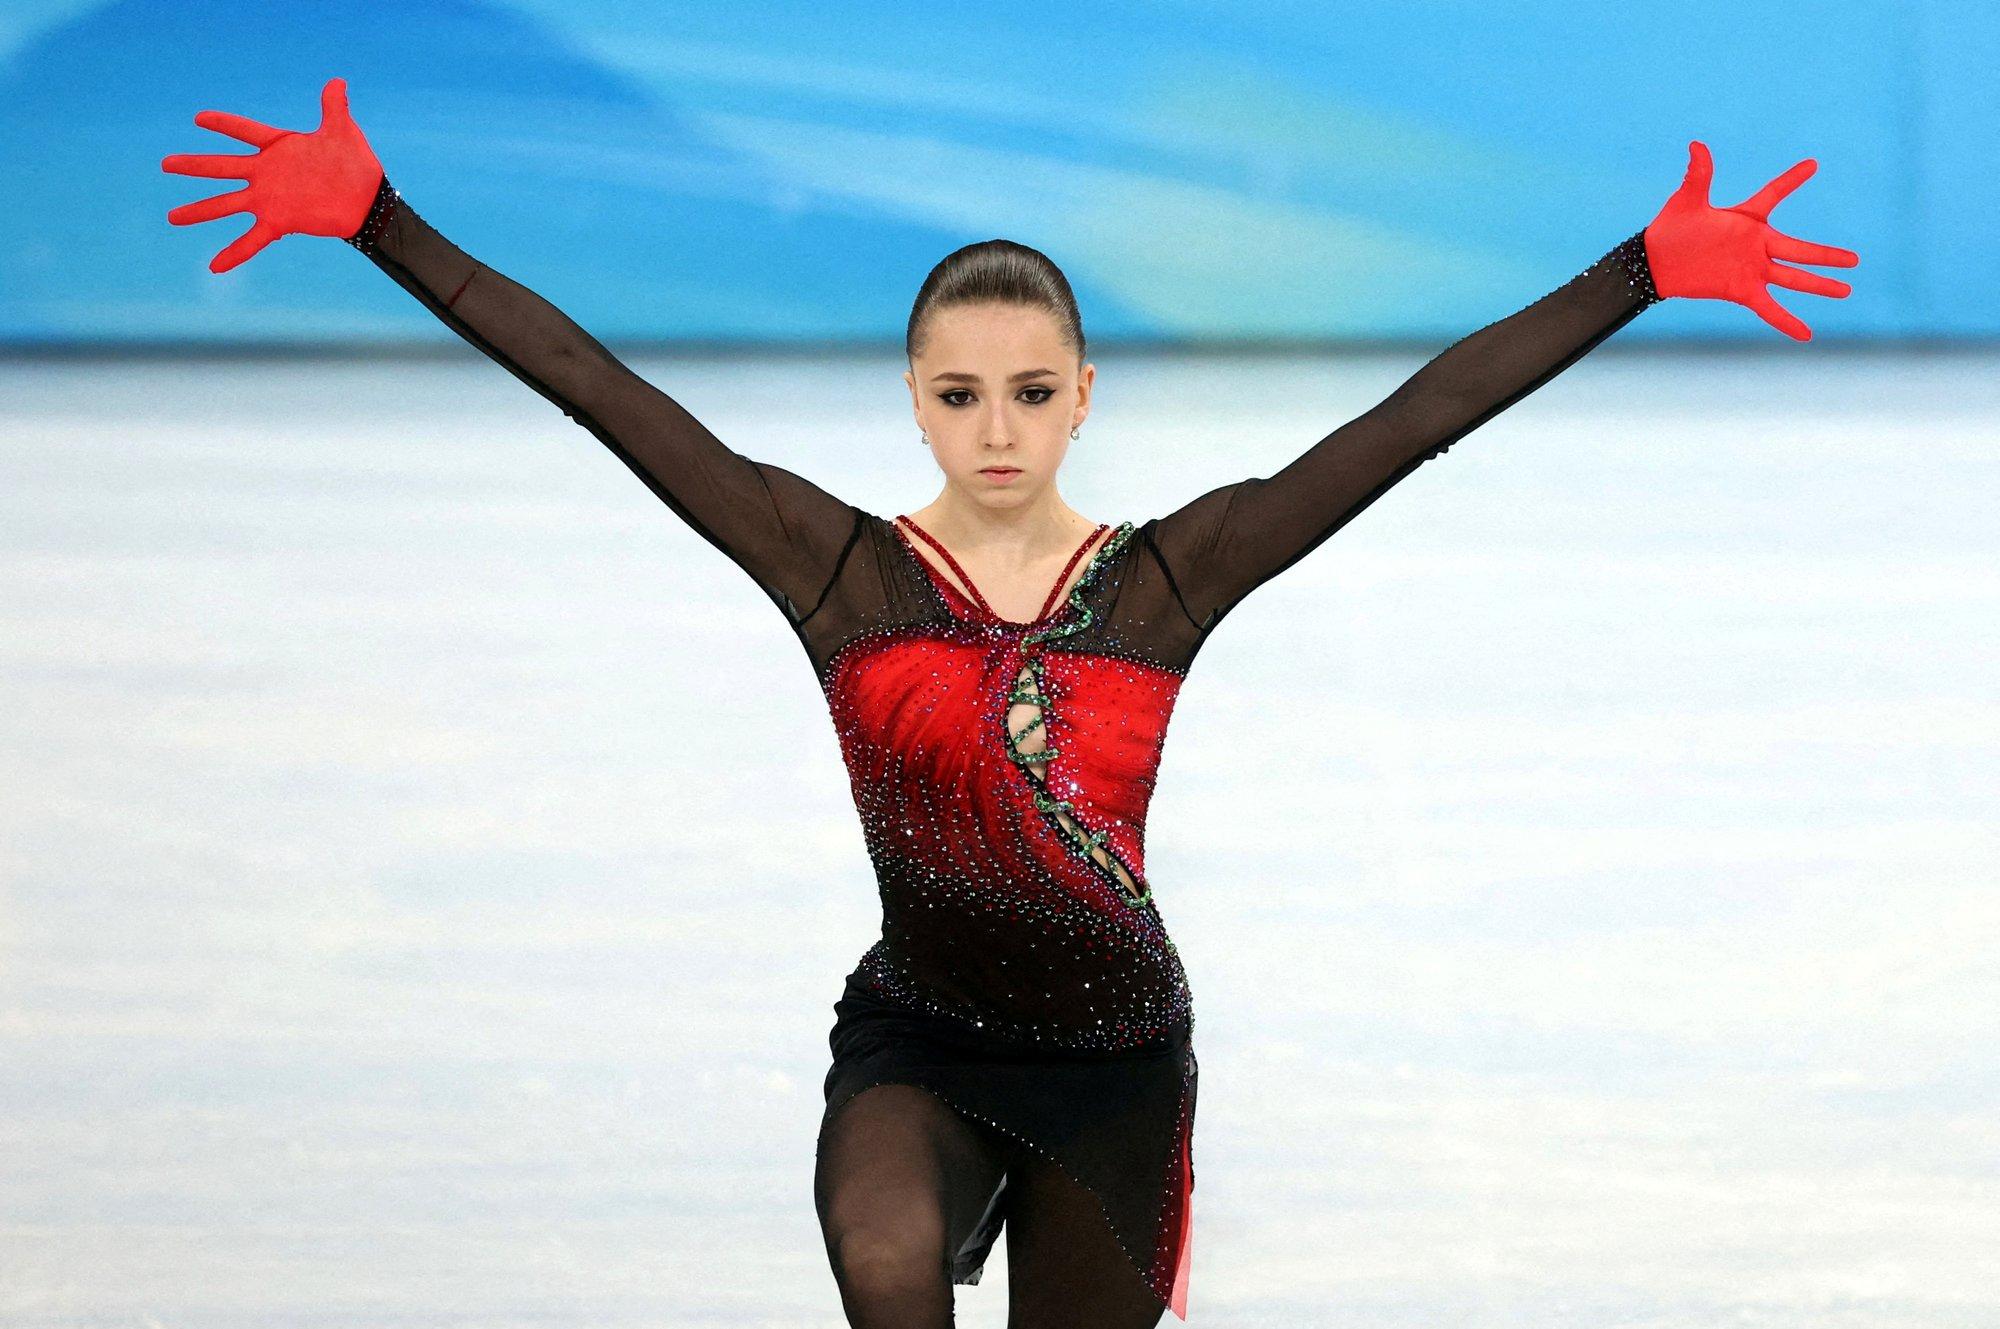 Российская фигуристка Камила Валиева дисквалифицирована на 4 года за допинг